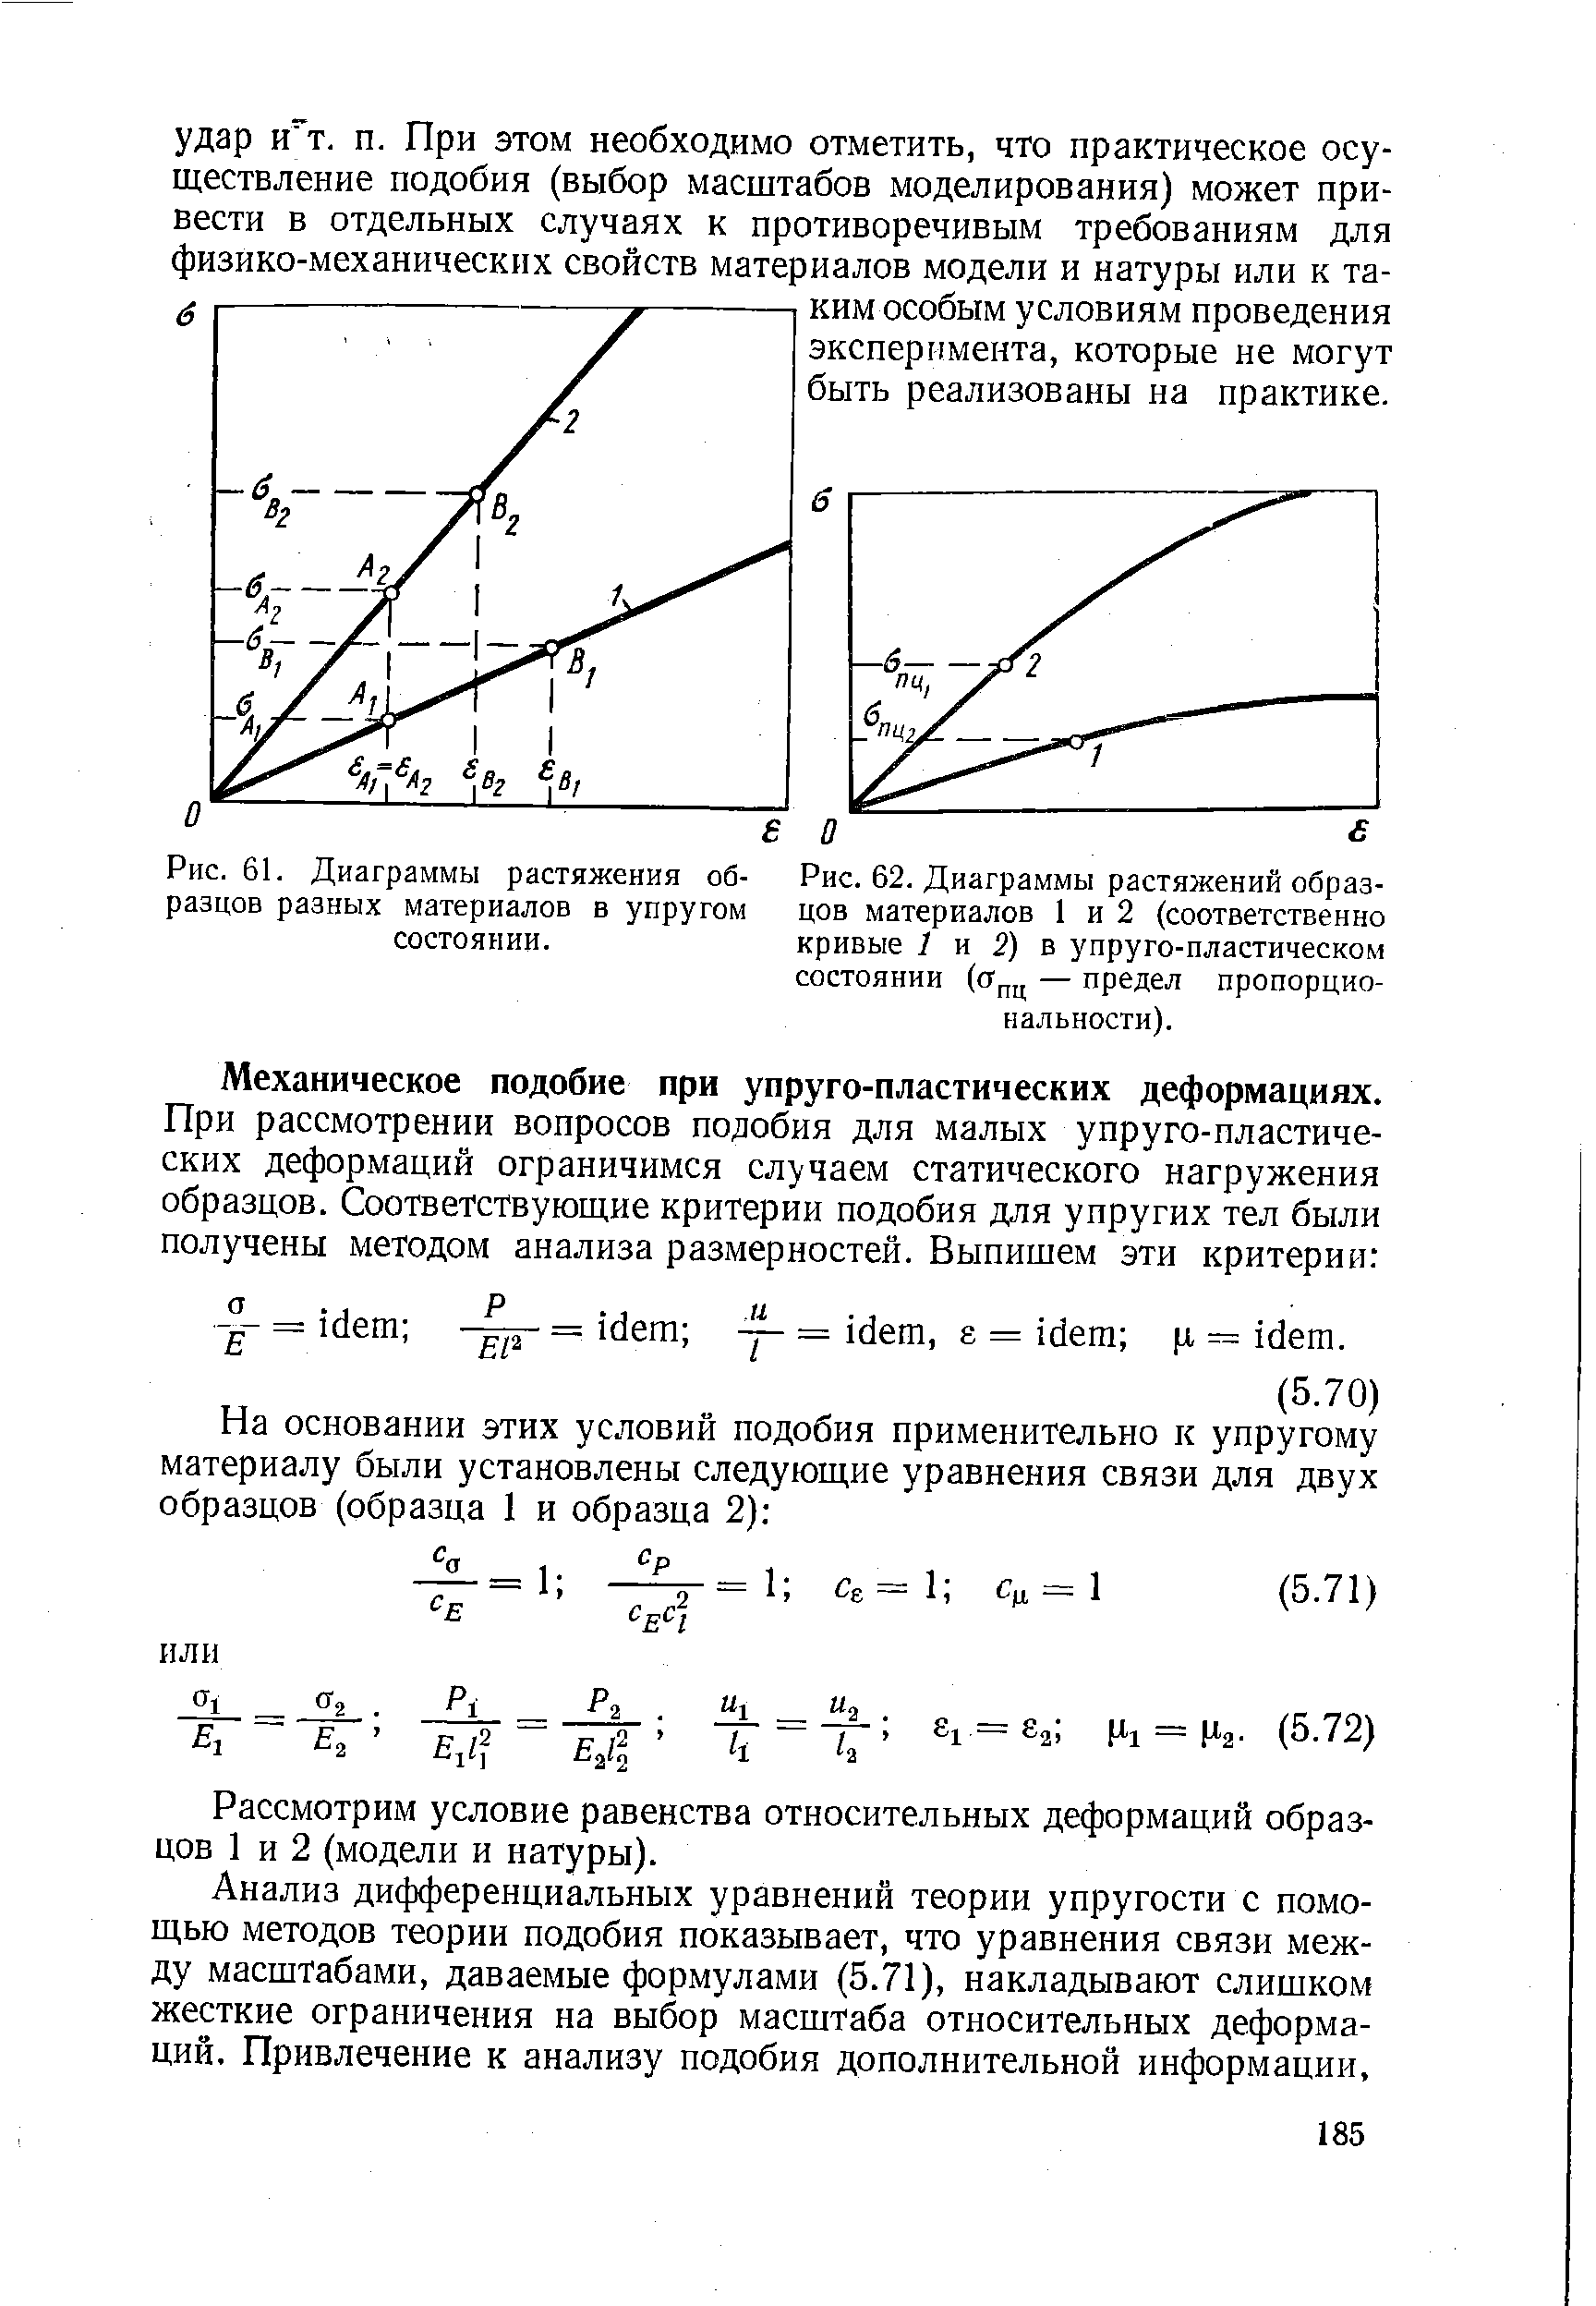 Рис. 62. Диаграммы растяжений образцов материалов 1 и 2 (соответственно кривые 7 и 2) в упруго-пластическом состоянии (сг,,ц — предел пропорциональности).
